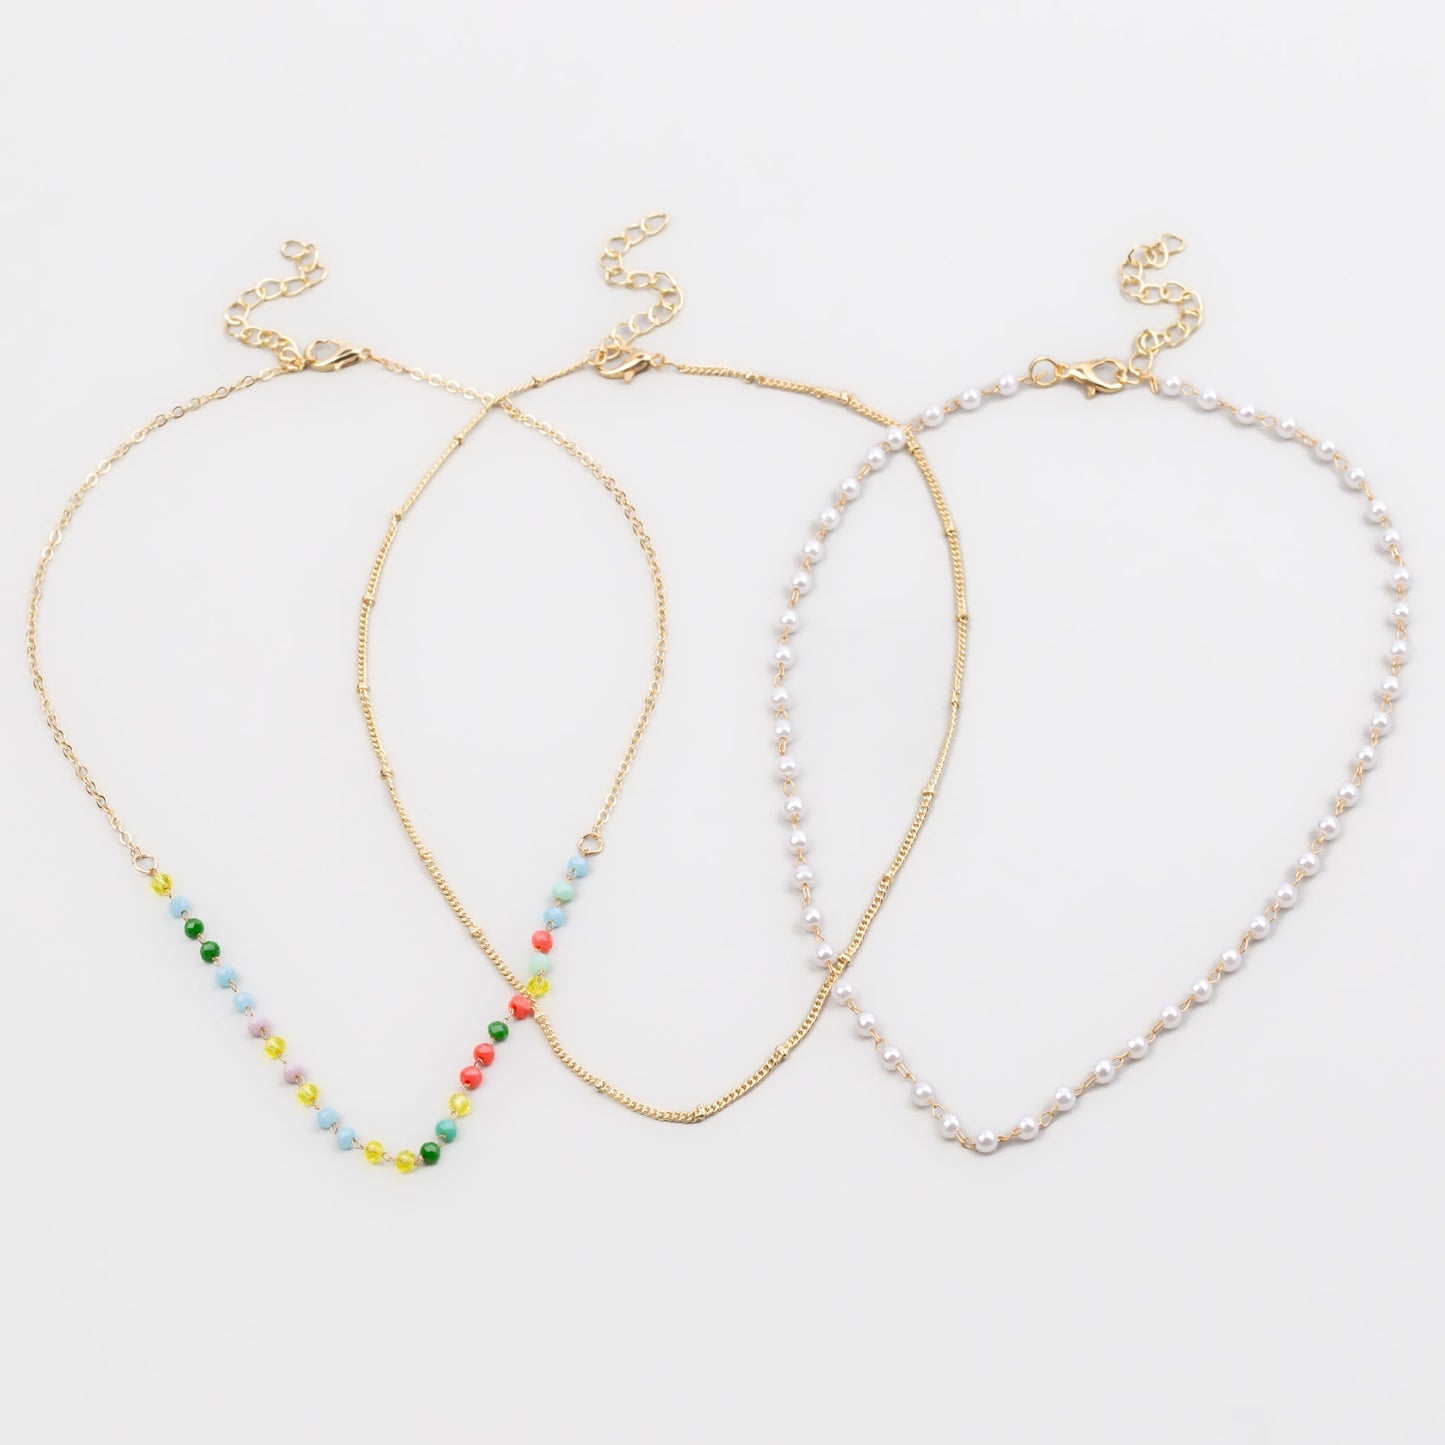 Coliere cu lănțișor, pietre colorate și perle mici, set 3 buc - Auriu